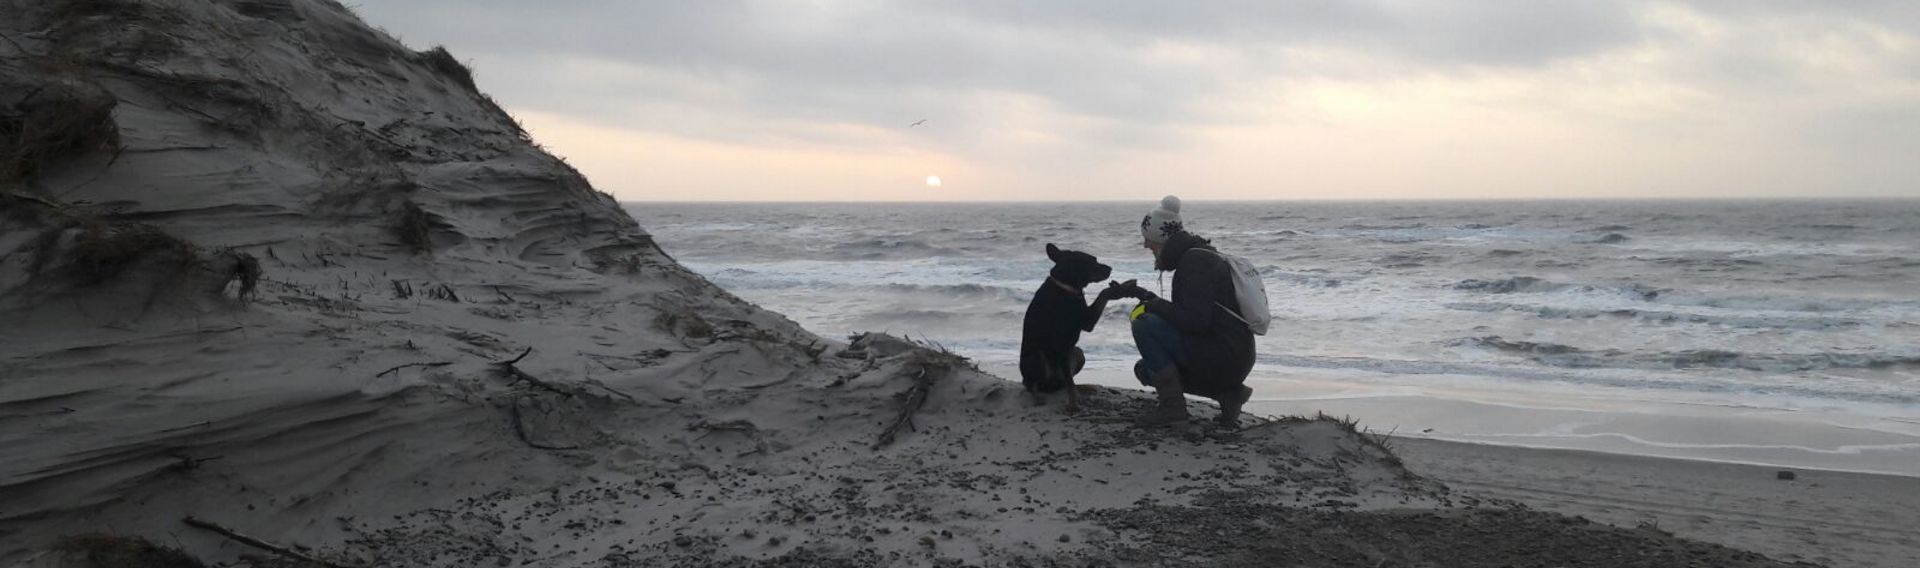 Stellplätze am Meer – Camping mit Hund